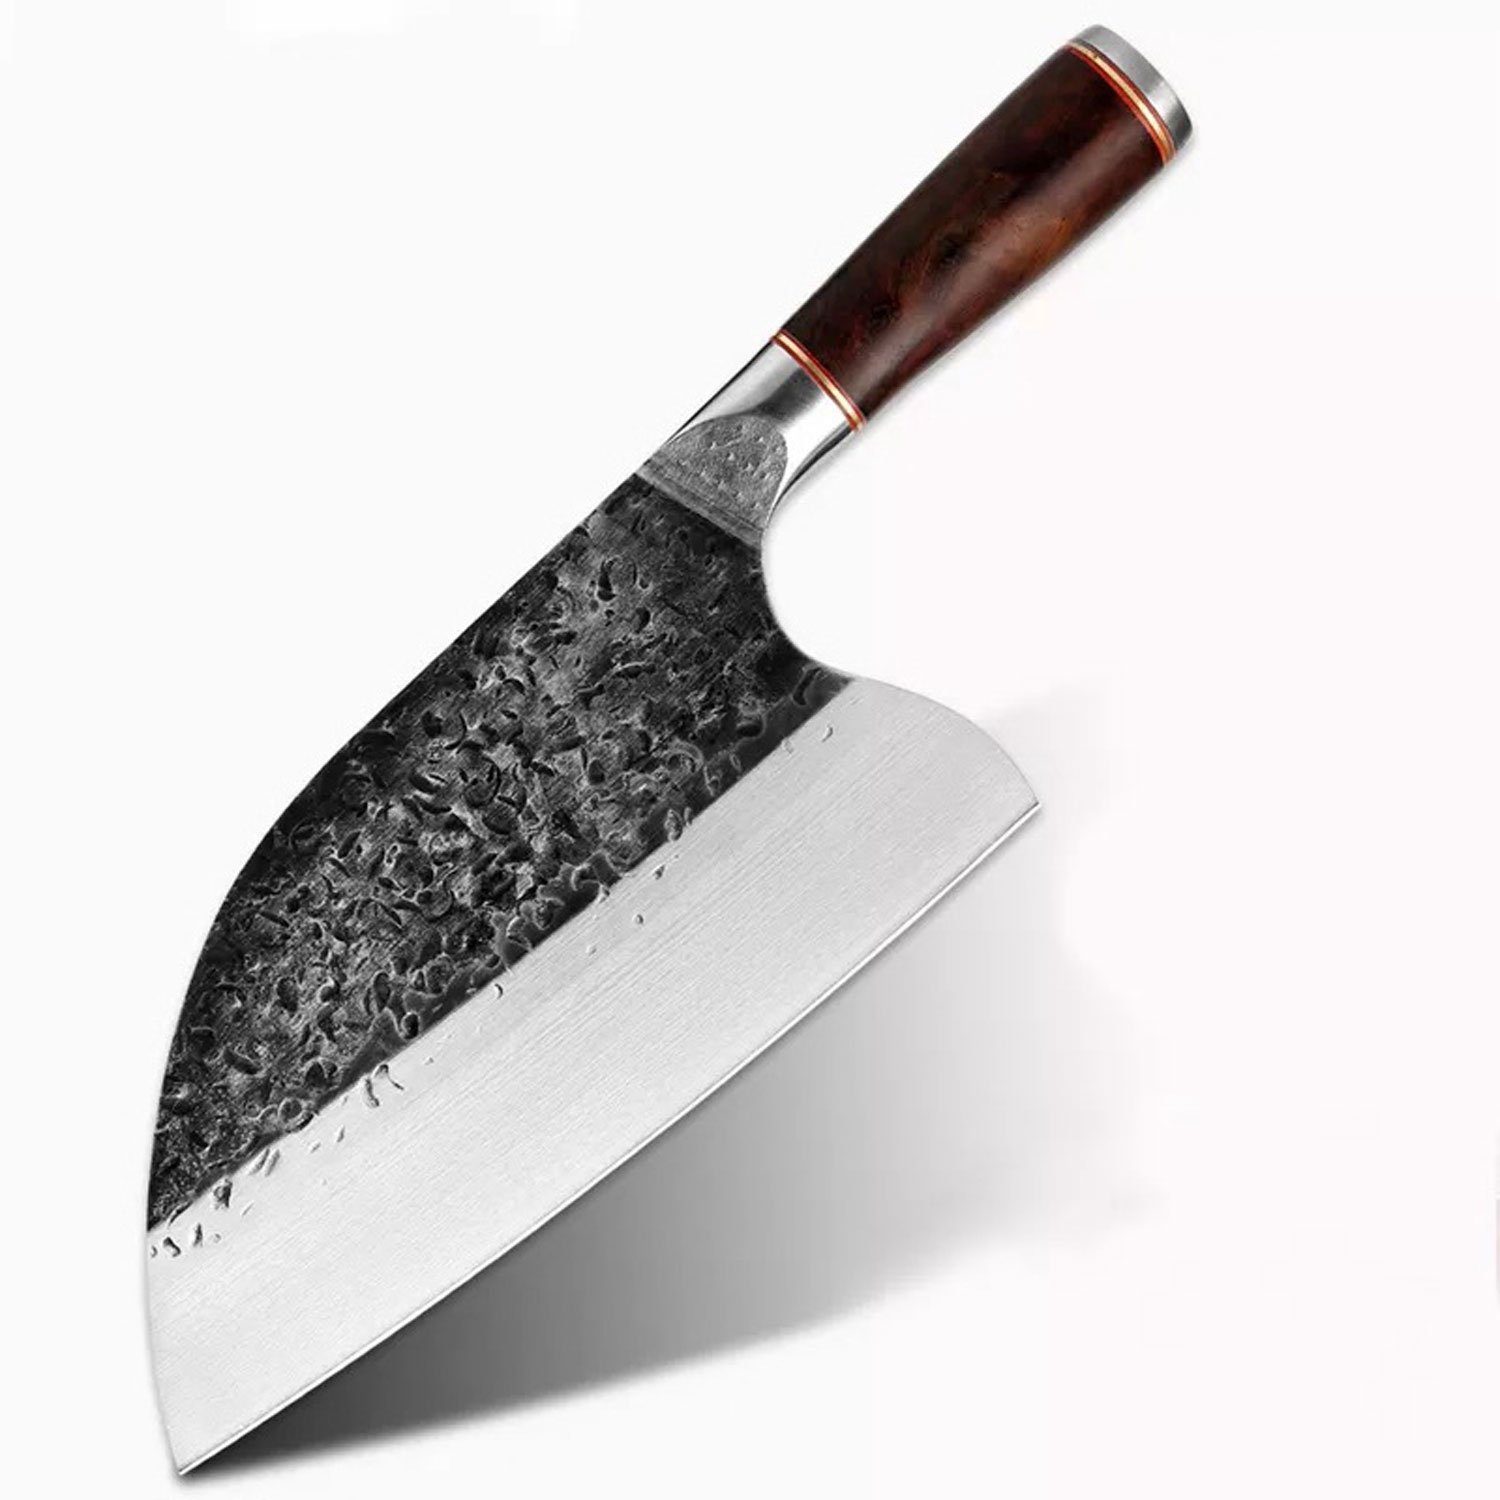 Muxel Hackmesser Full Tang Messer – Die Besondere Wahl: Hackmesser, Metzgermesser und, schwer